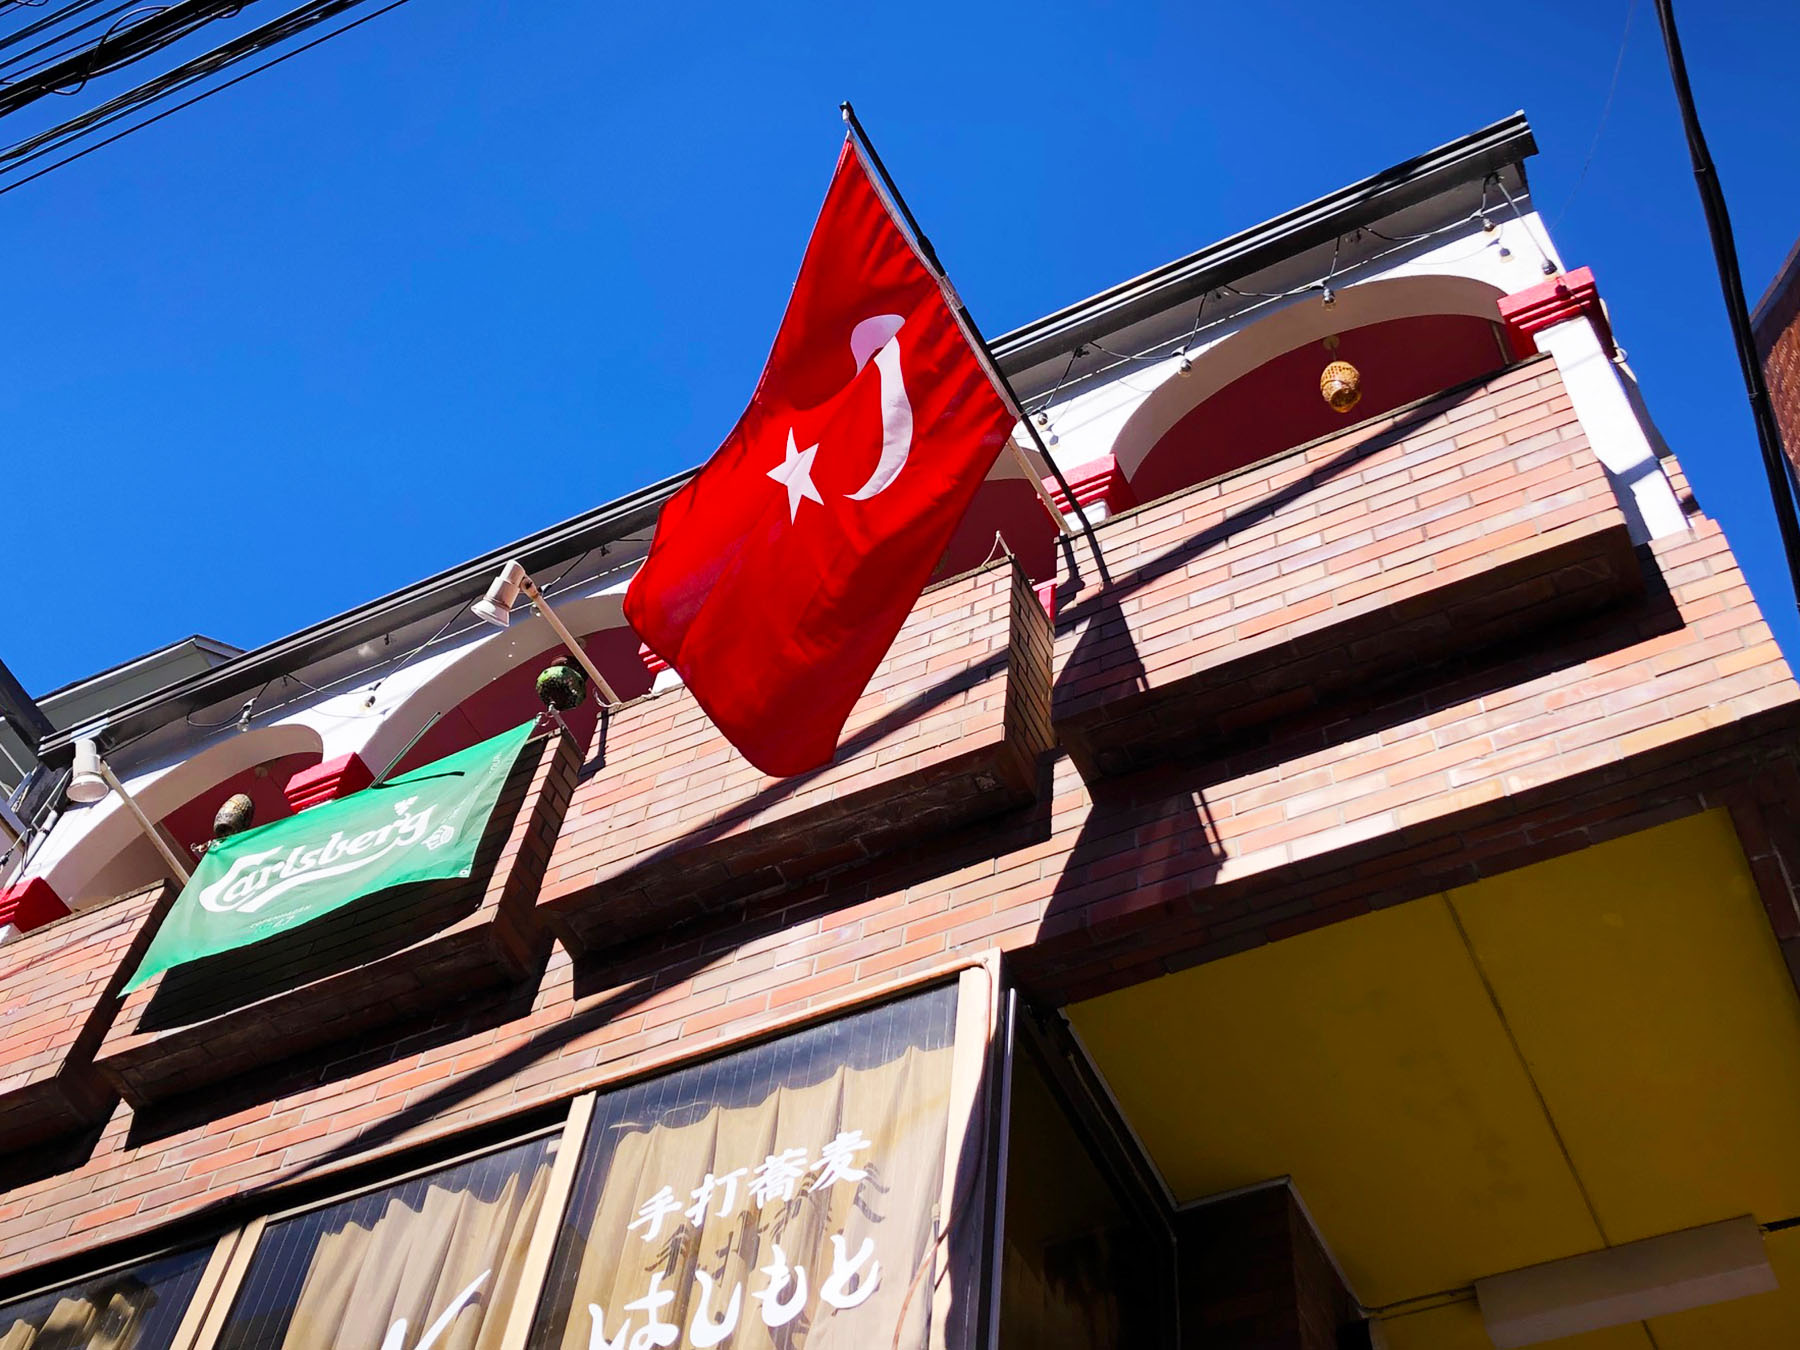 トルコ料理アセナ・店舗外のトルコ国旗